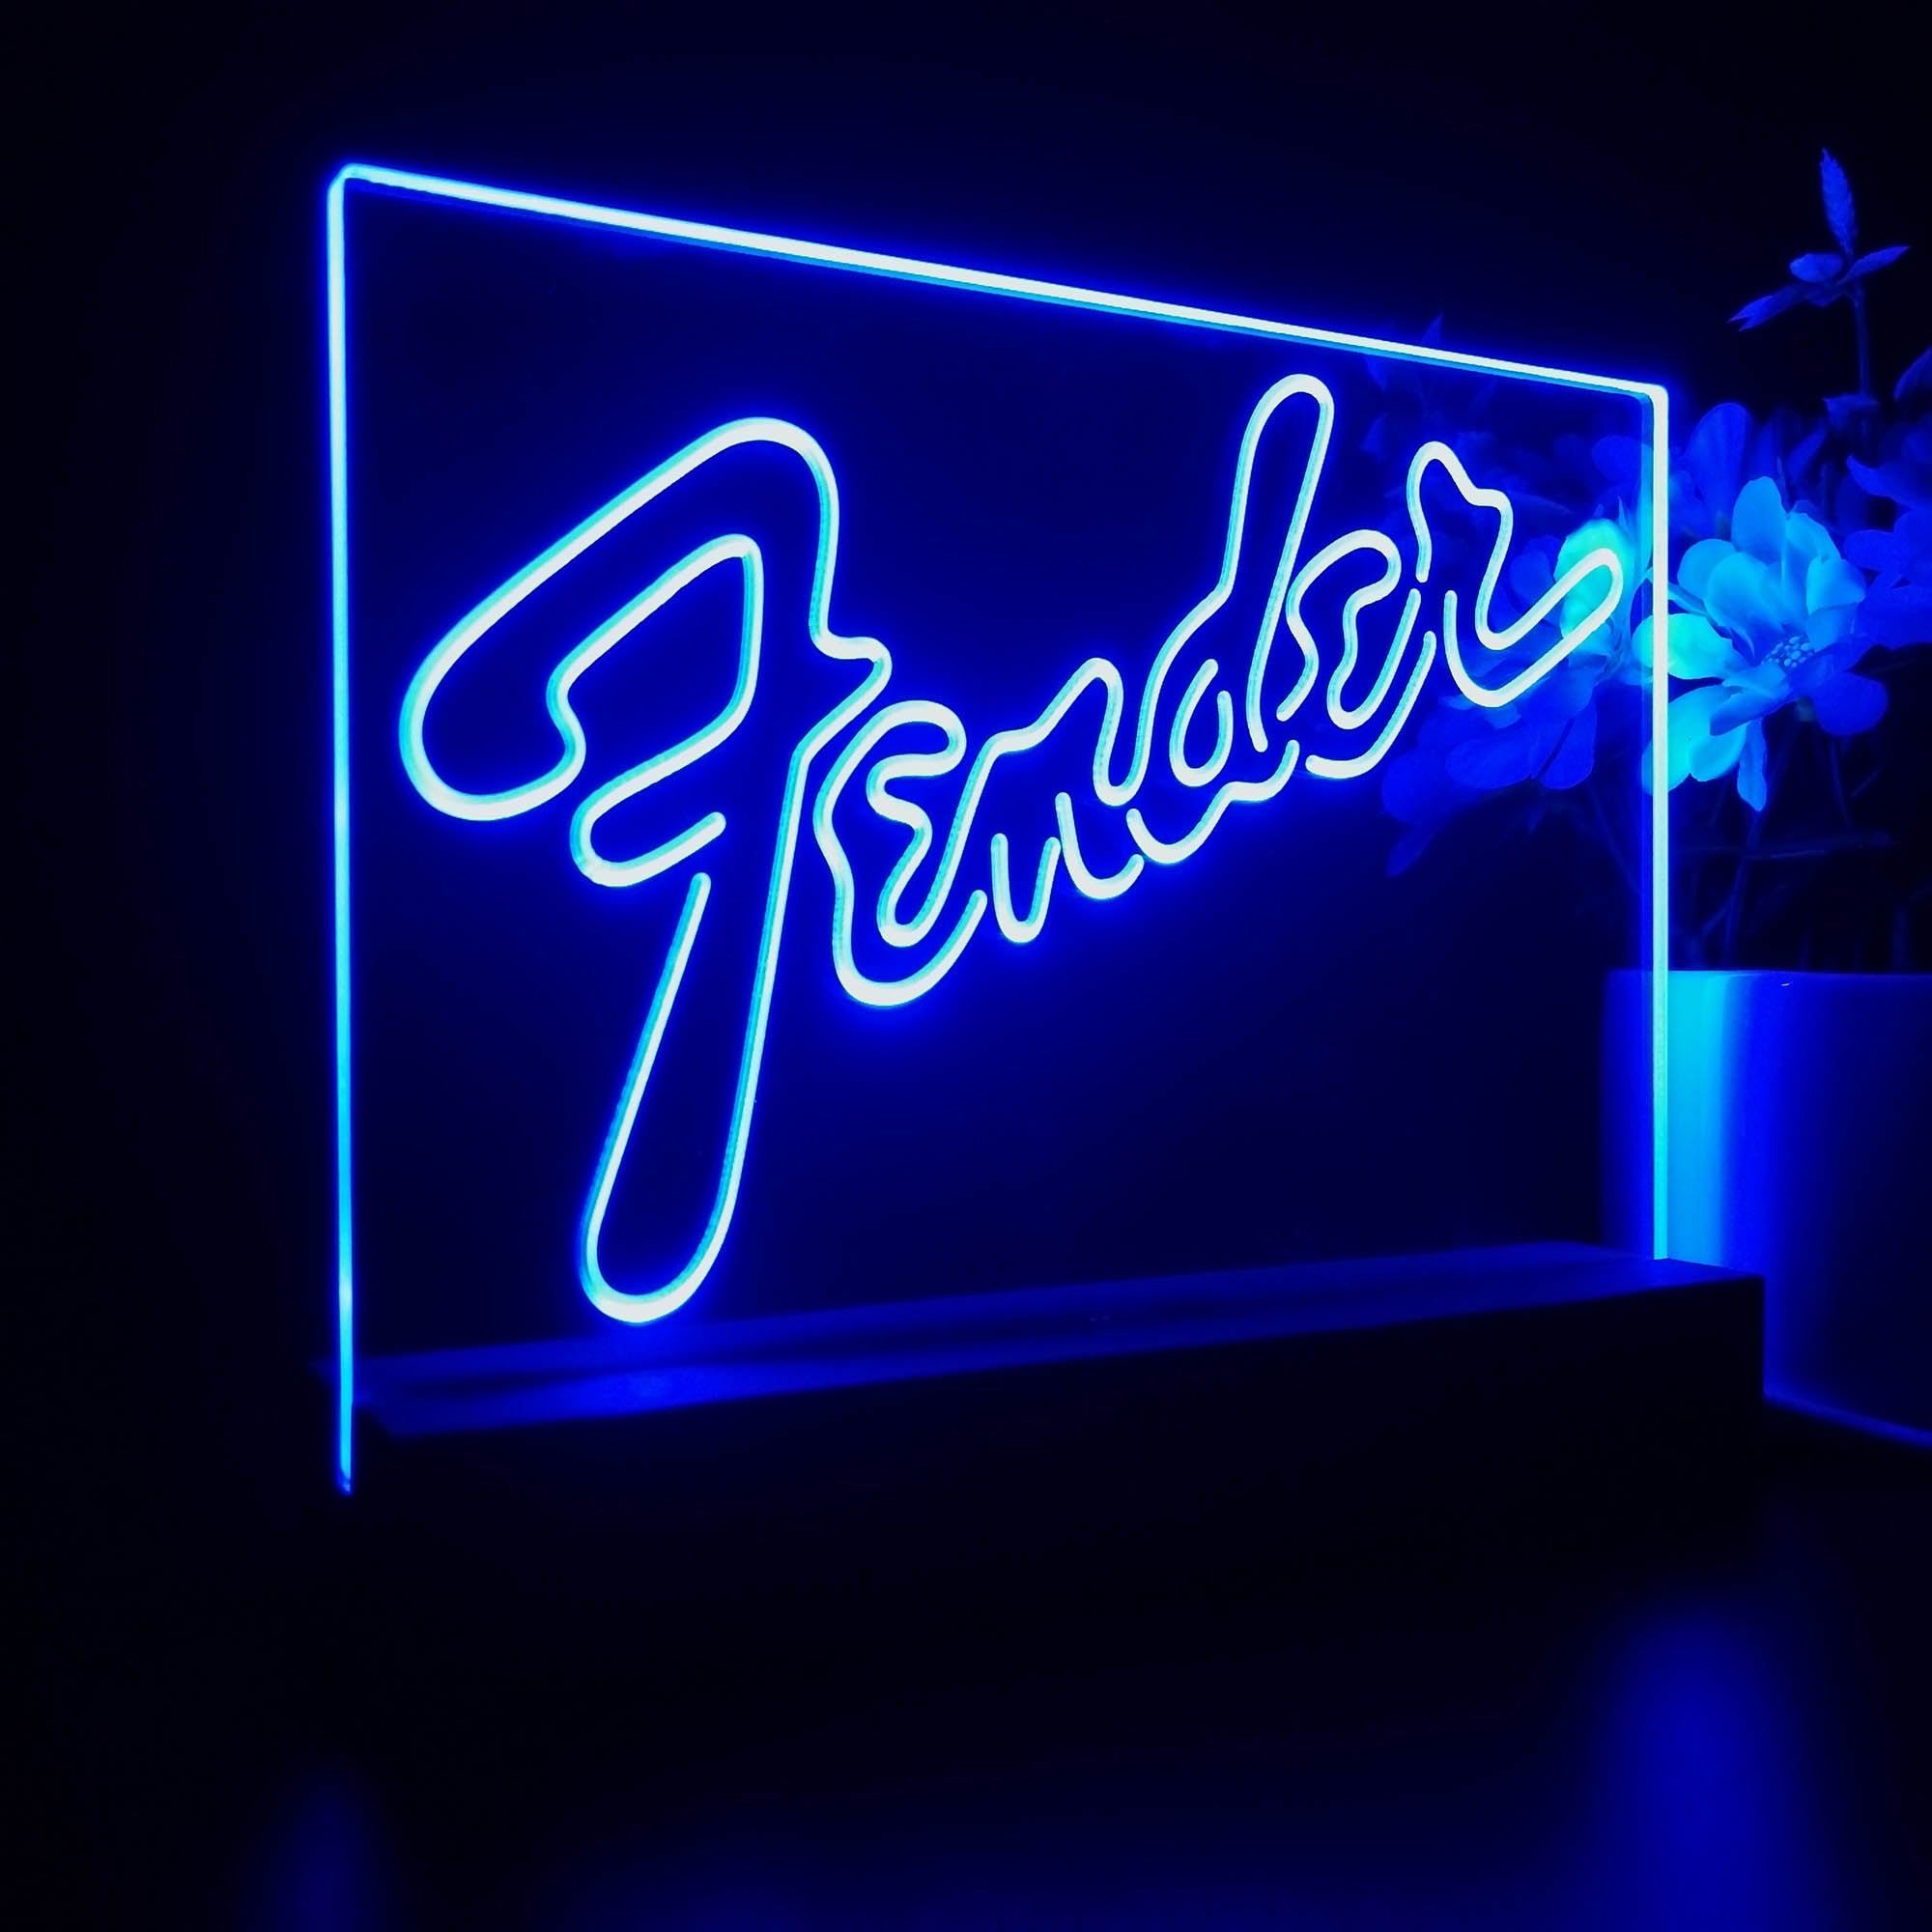 Fender Guitar Night Light LED Sign